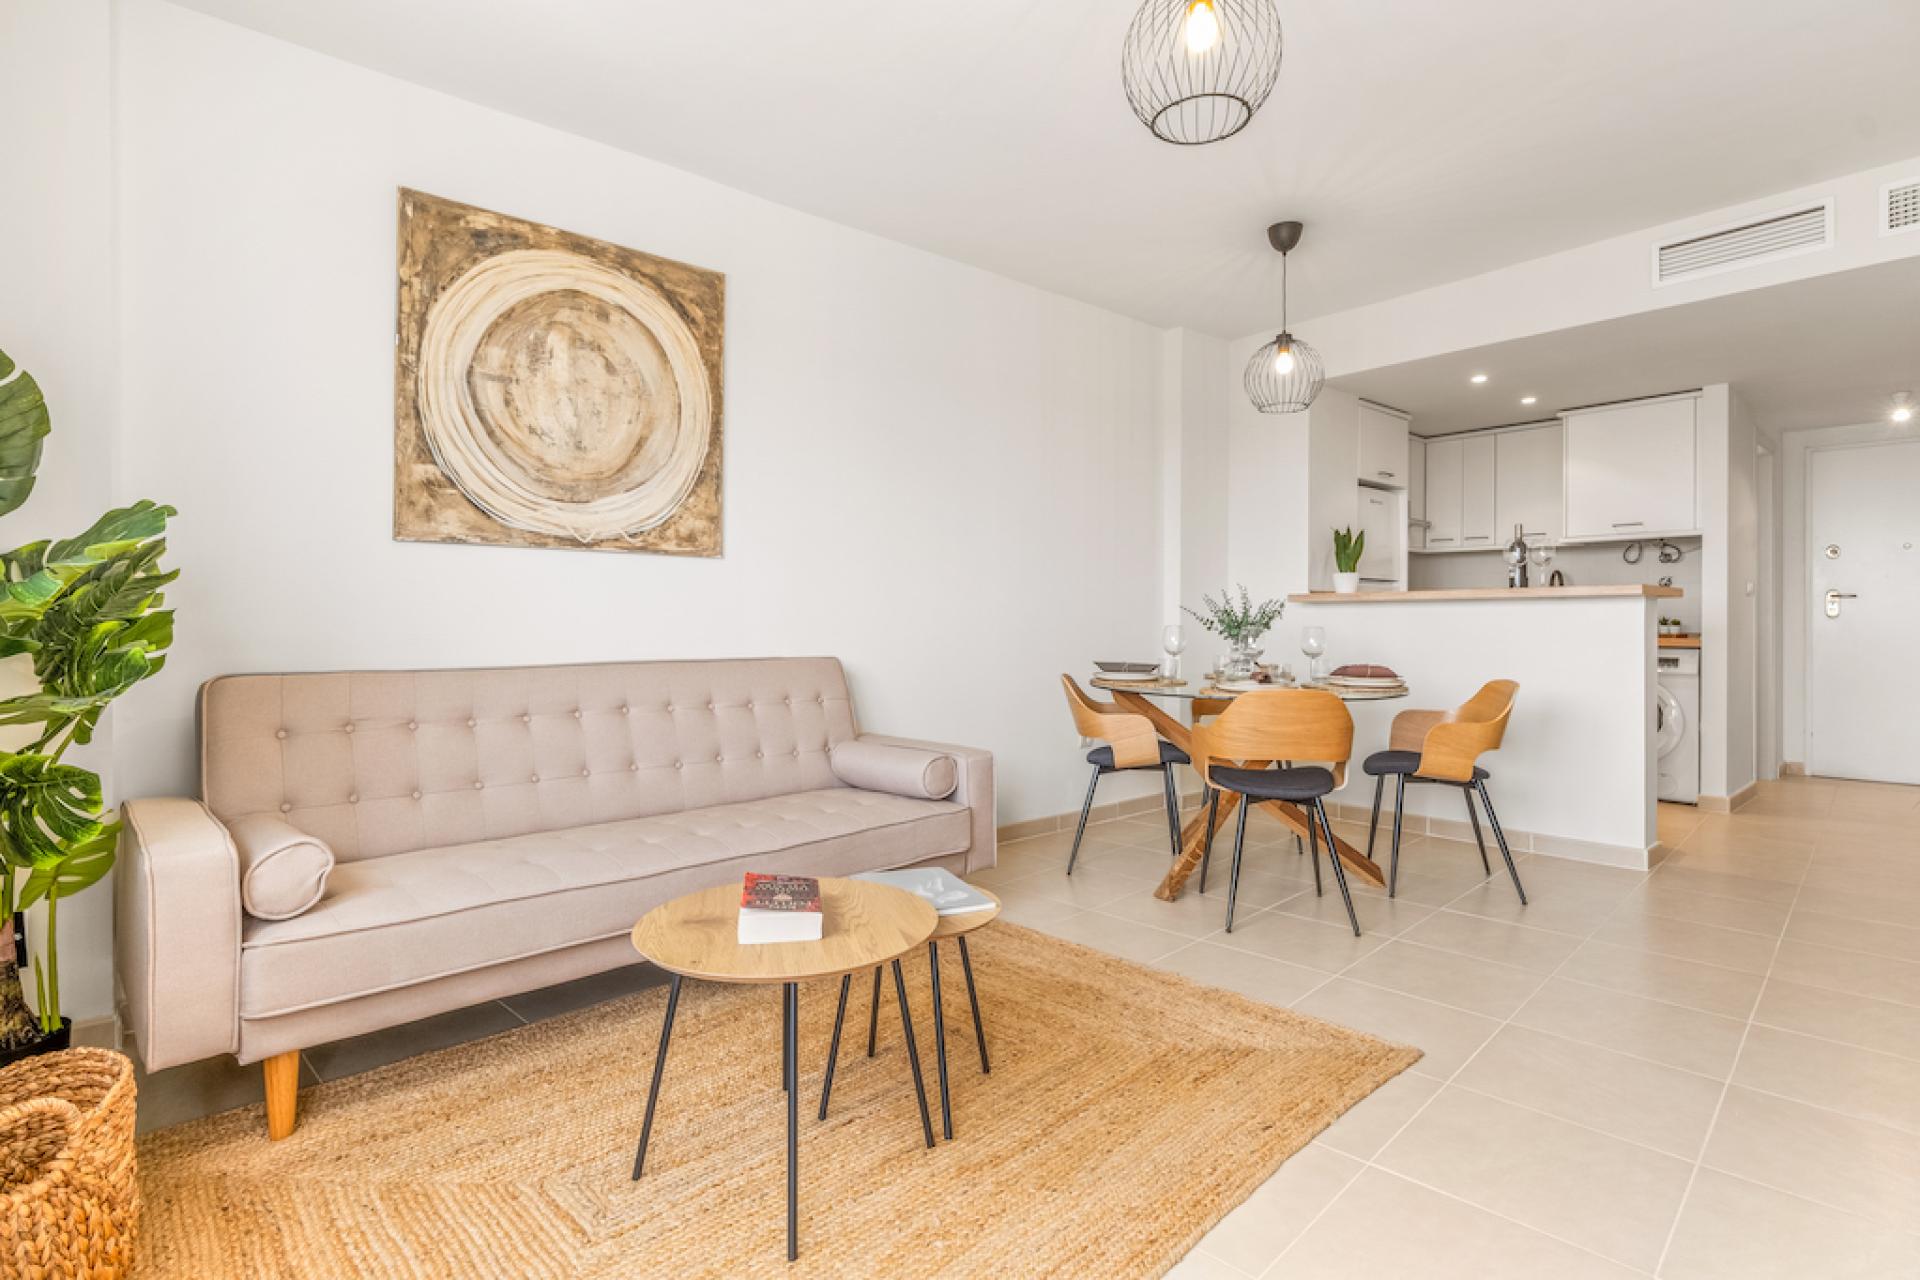 2 slaapkamer Appartement met dakterras in Orihuela Costa - Nieuwbouw in Medvilla Spanje